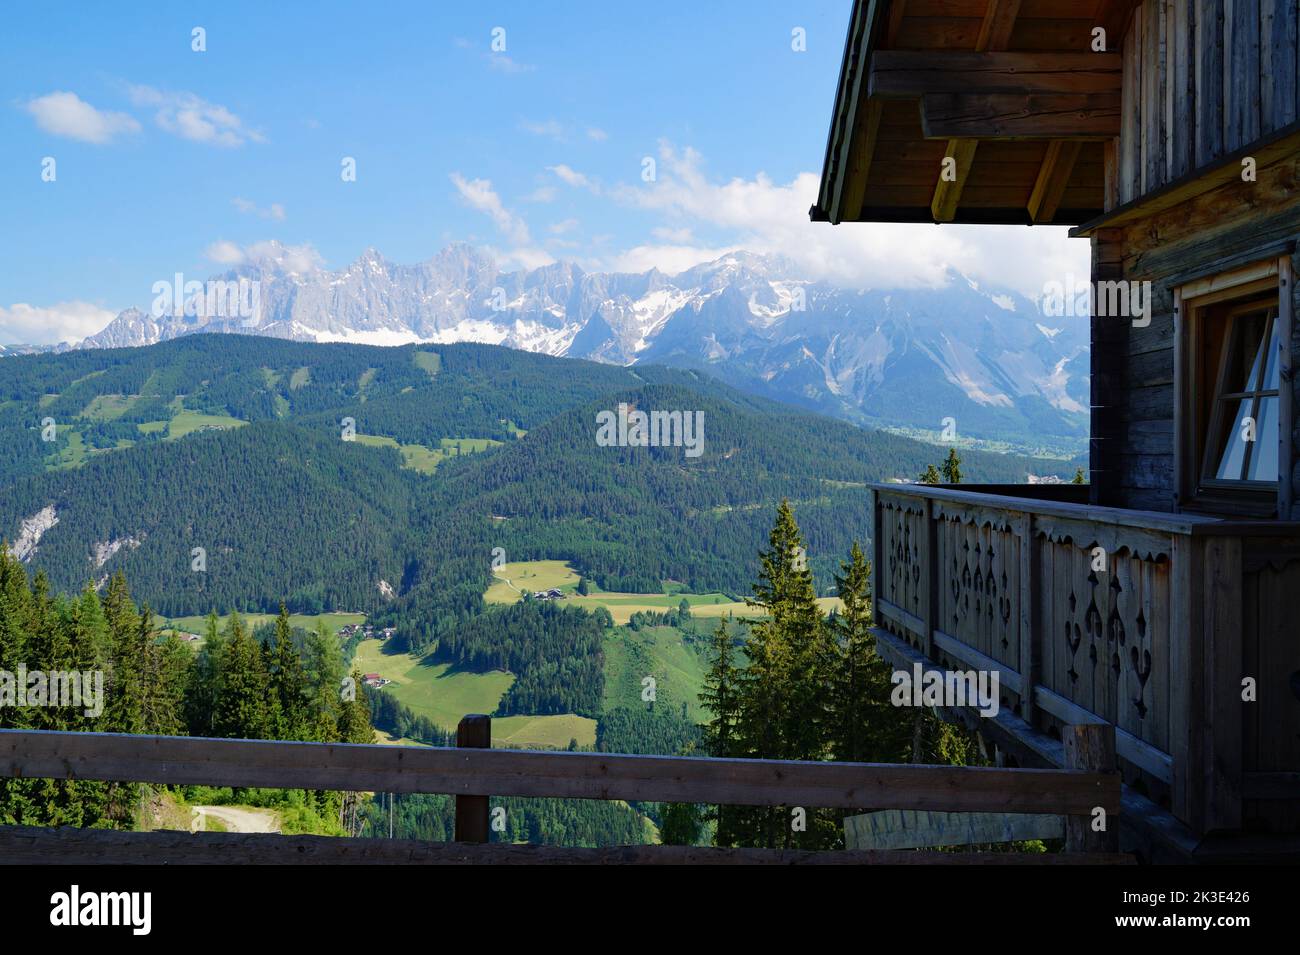 Un pittoresco paesaggio montano delle alpi austriache da una tradizionale cabina alpina in legno nella regione di Schladming-Dachstein (Steiermark) Foto Stock